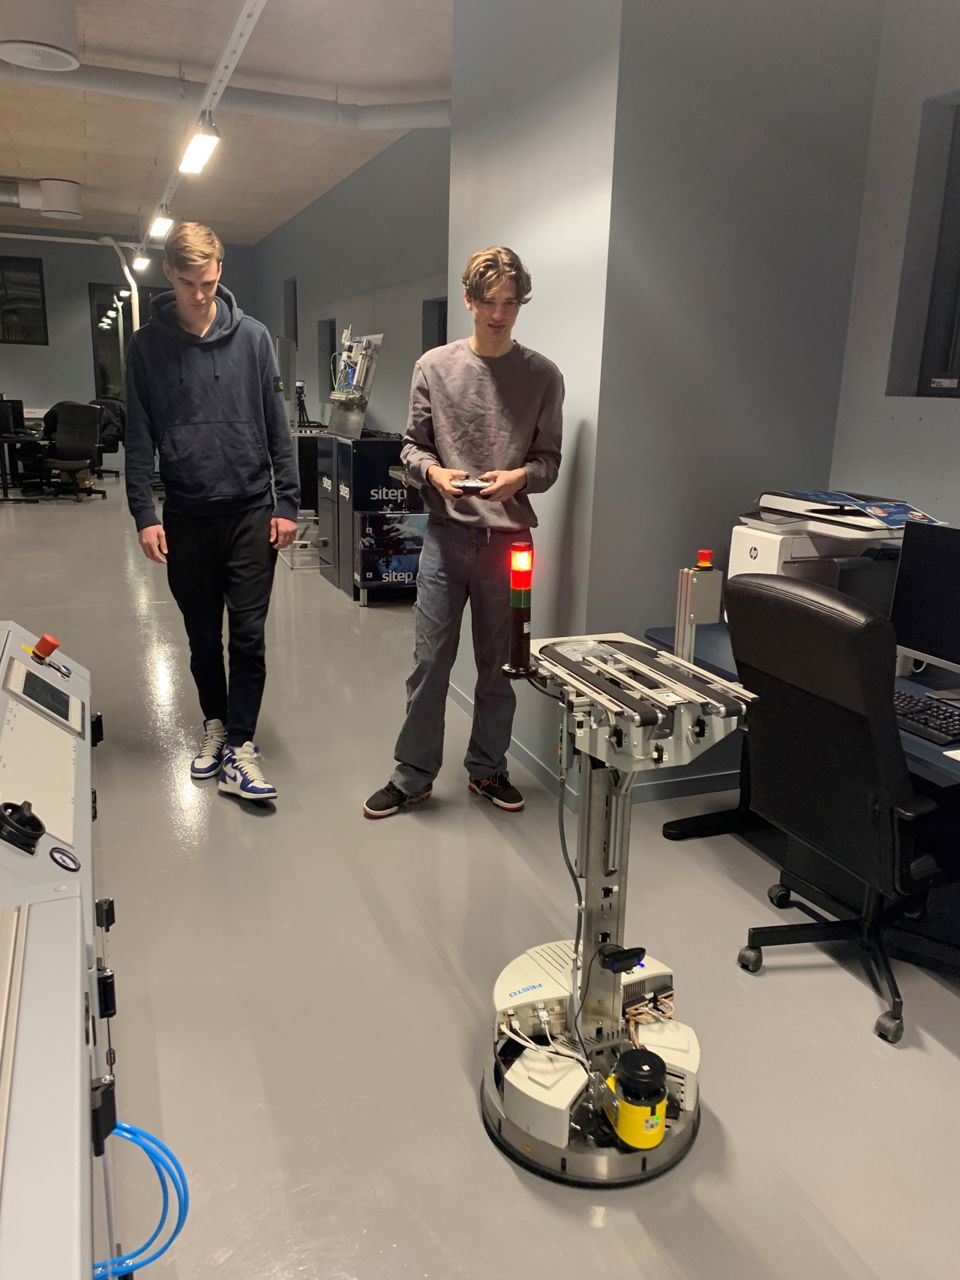 To elevar frå automatiseringsfaget styrer ein av robotane i Årdal teknologipark. Ein av dei held ein fjernkontroll i handa, medan den andre står ved sidan av. Roboten er i fokus. 